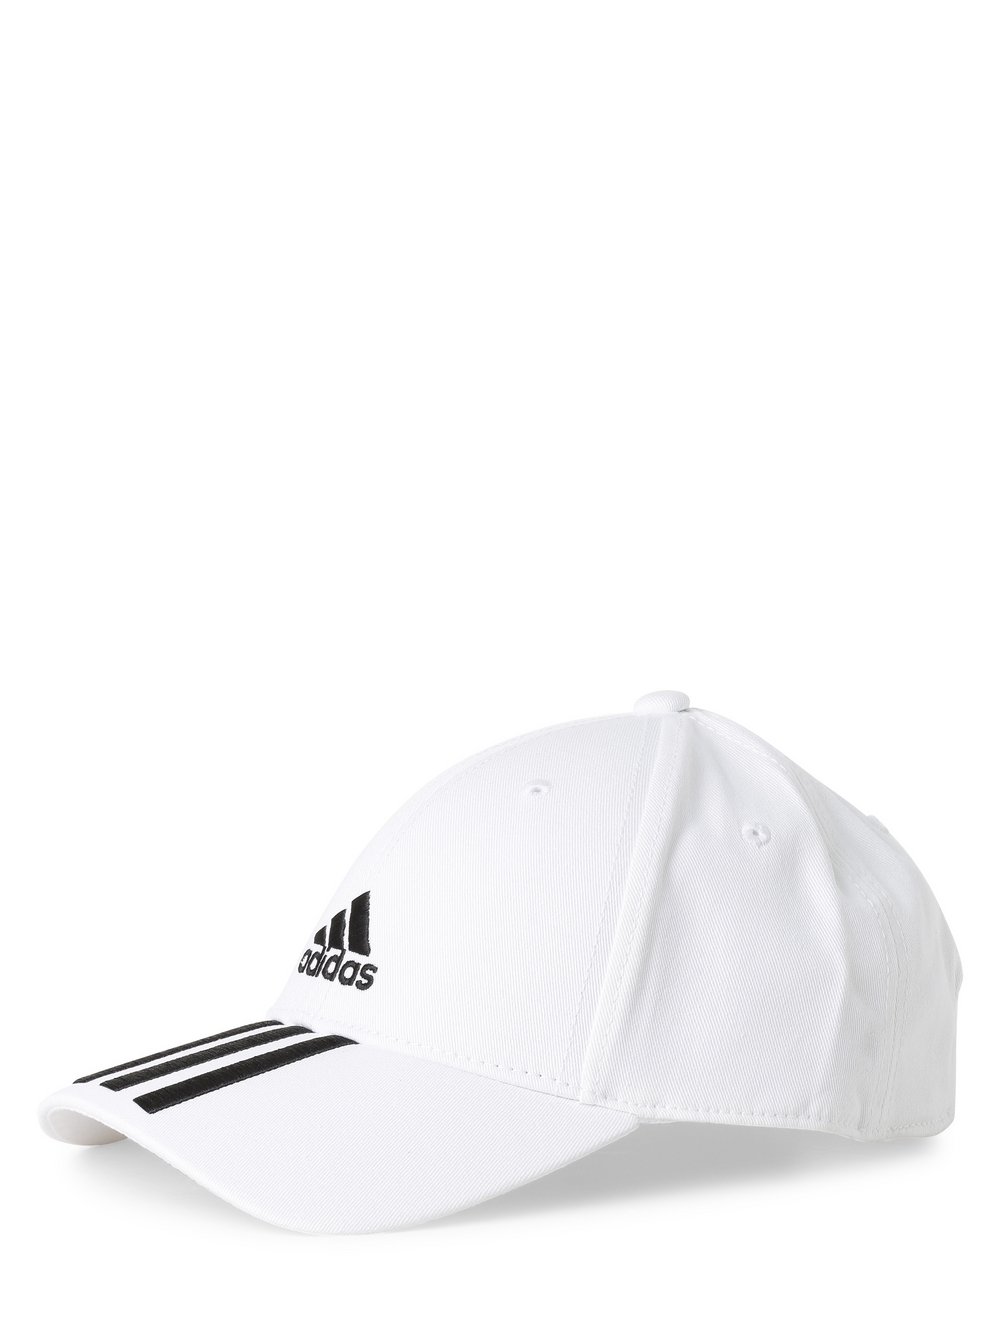 Adidas Performance - Męska czapka z daszkiem, biały